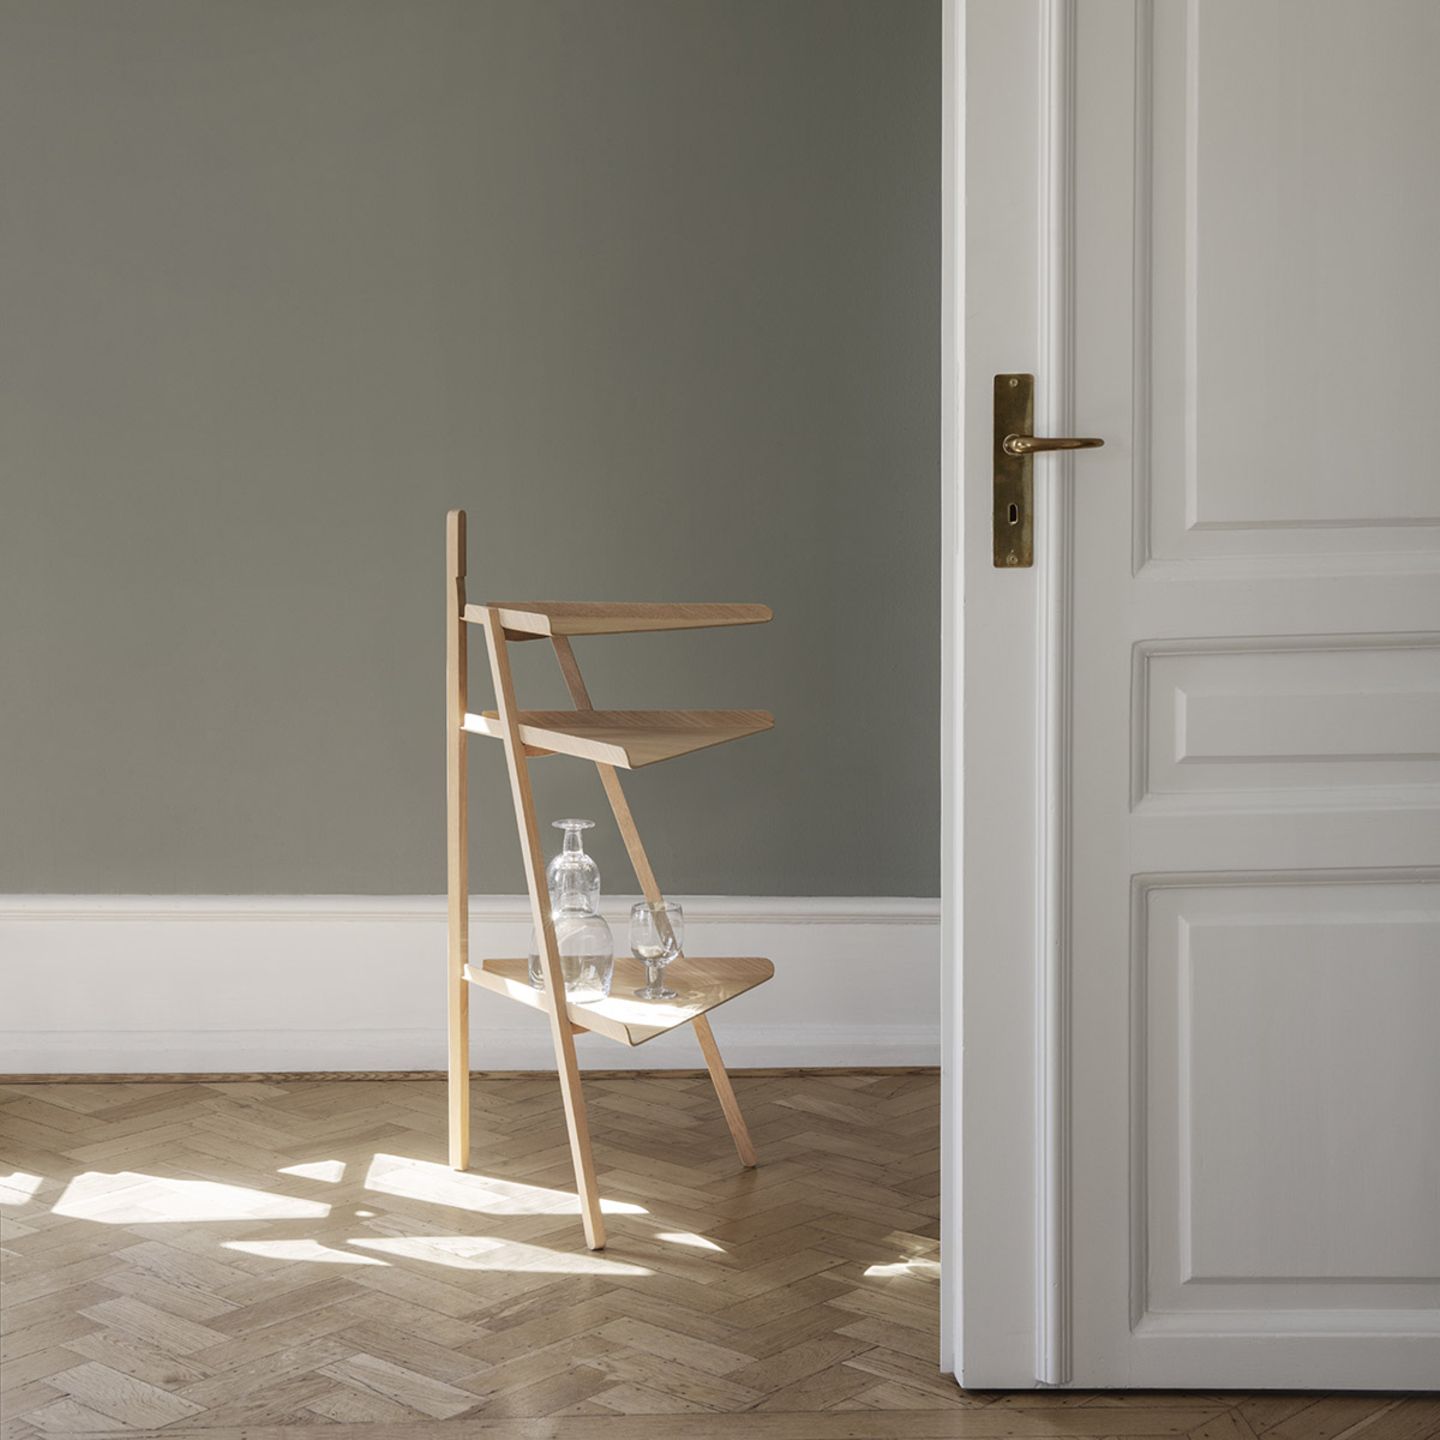 Regal "Trio" von Karakter Copenhagen in einem leeren Raum mit Holzboden und offener Tür